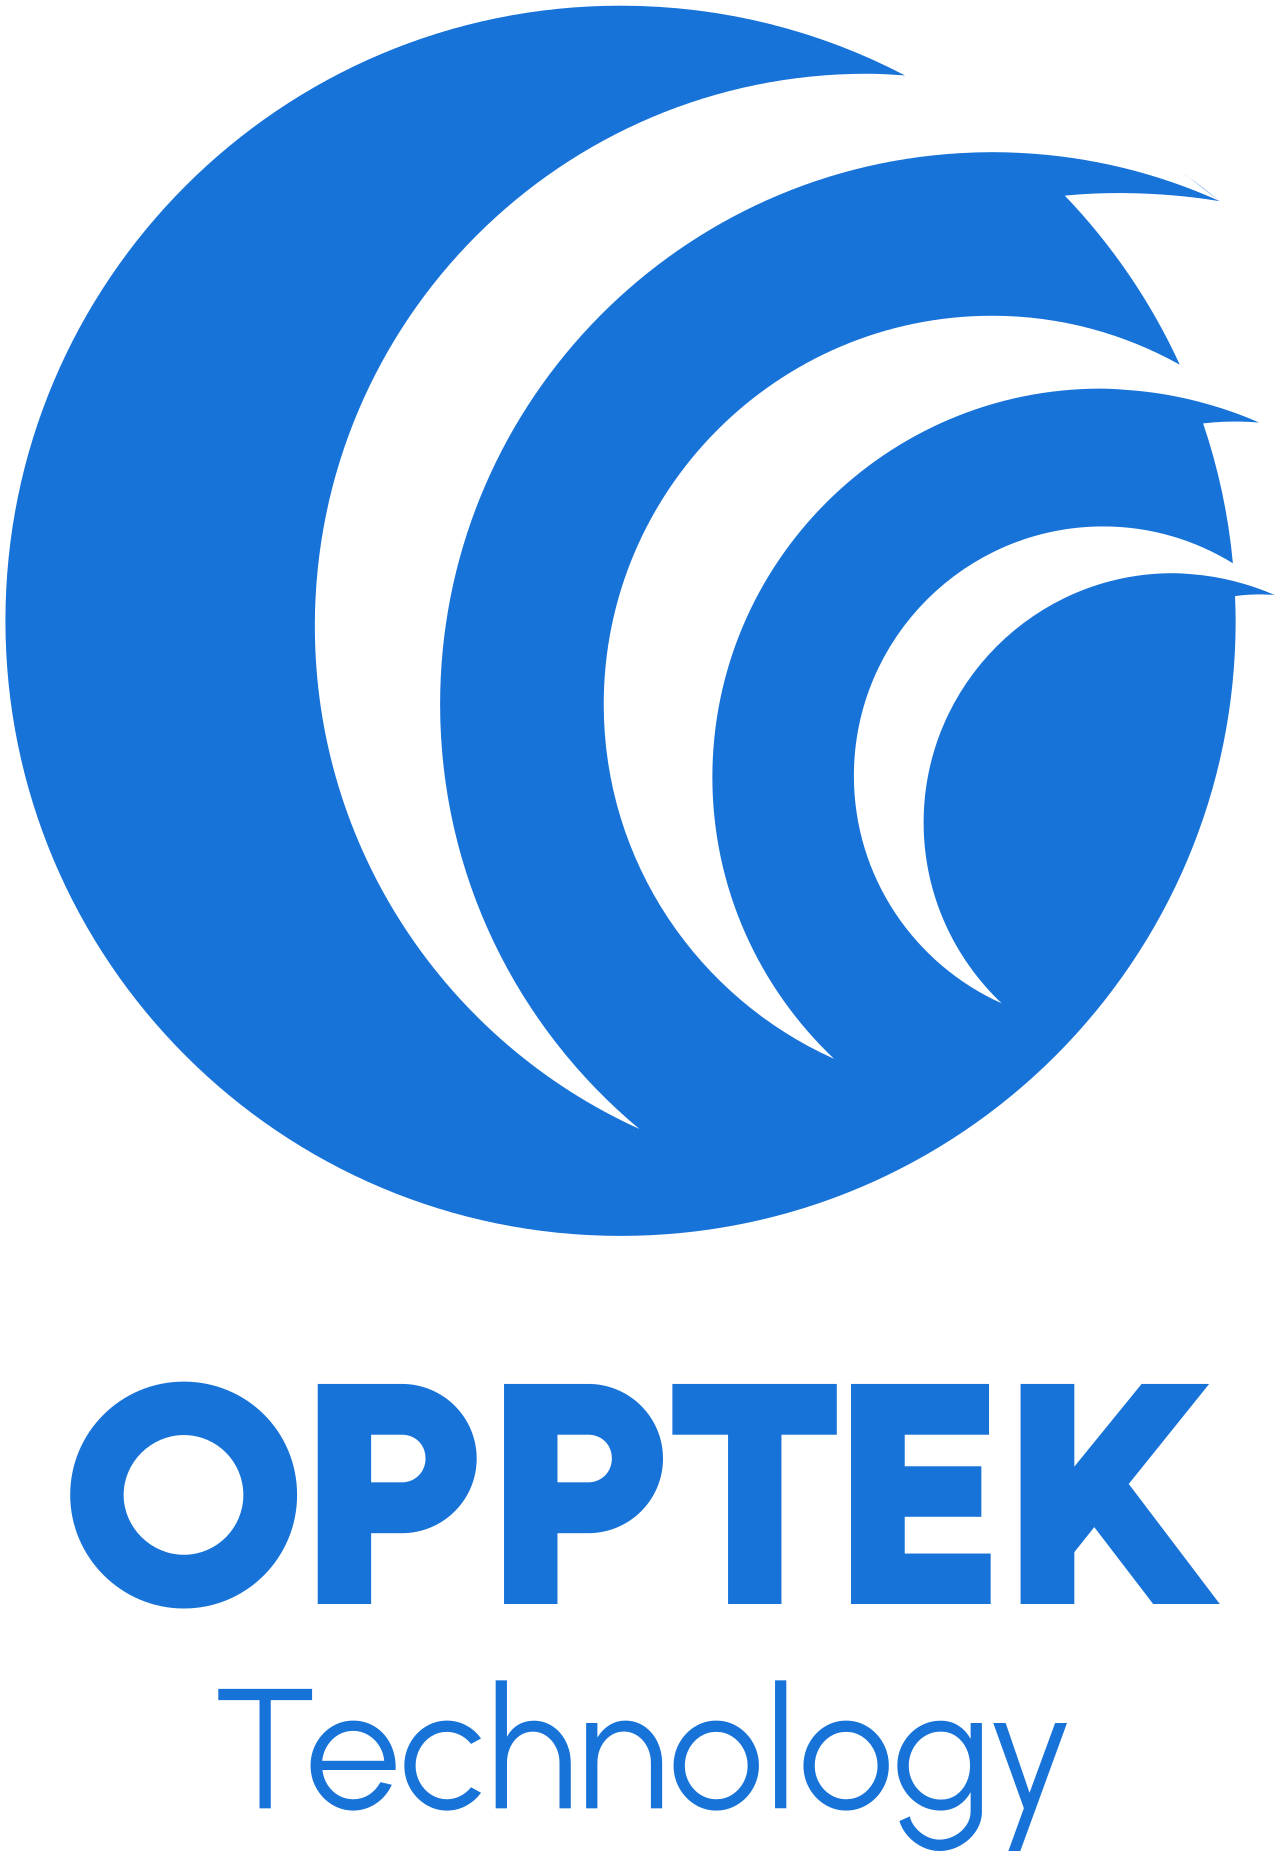 OPPTEK's logo